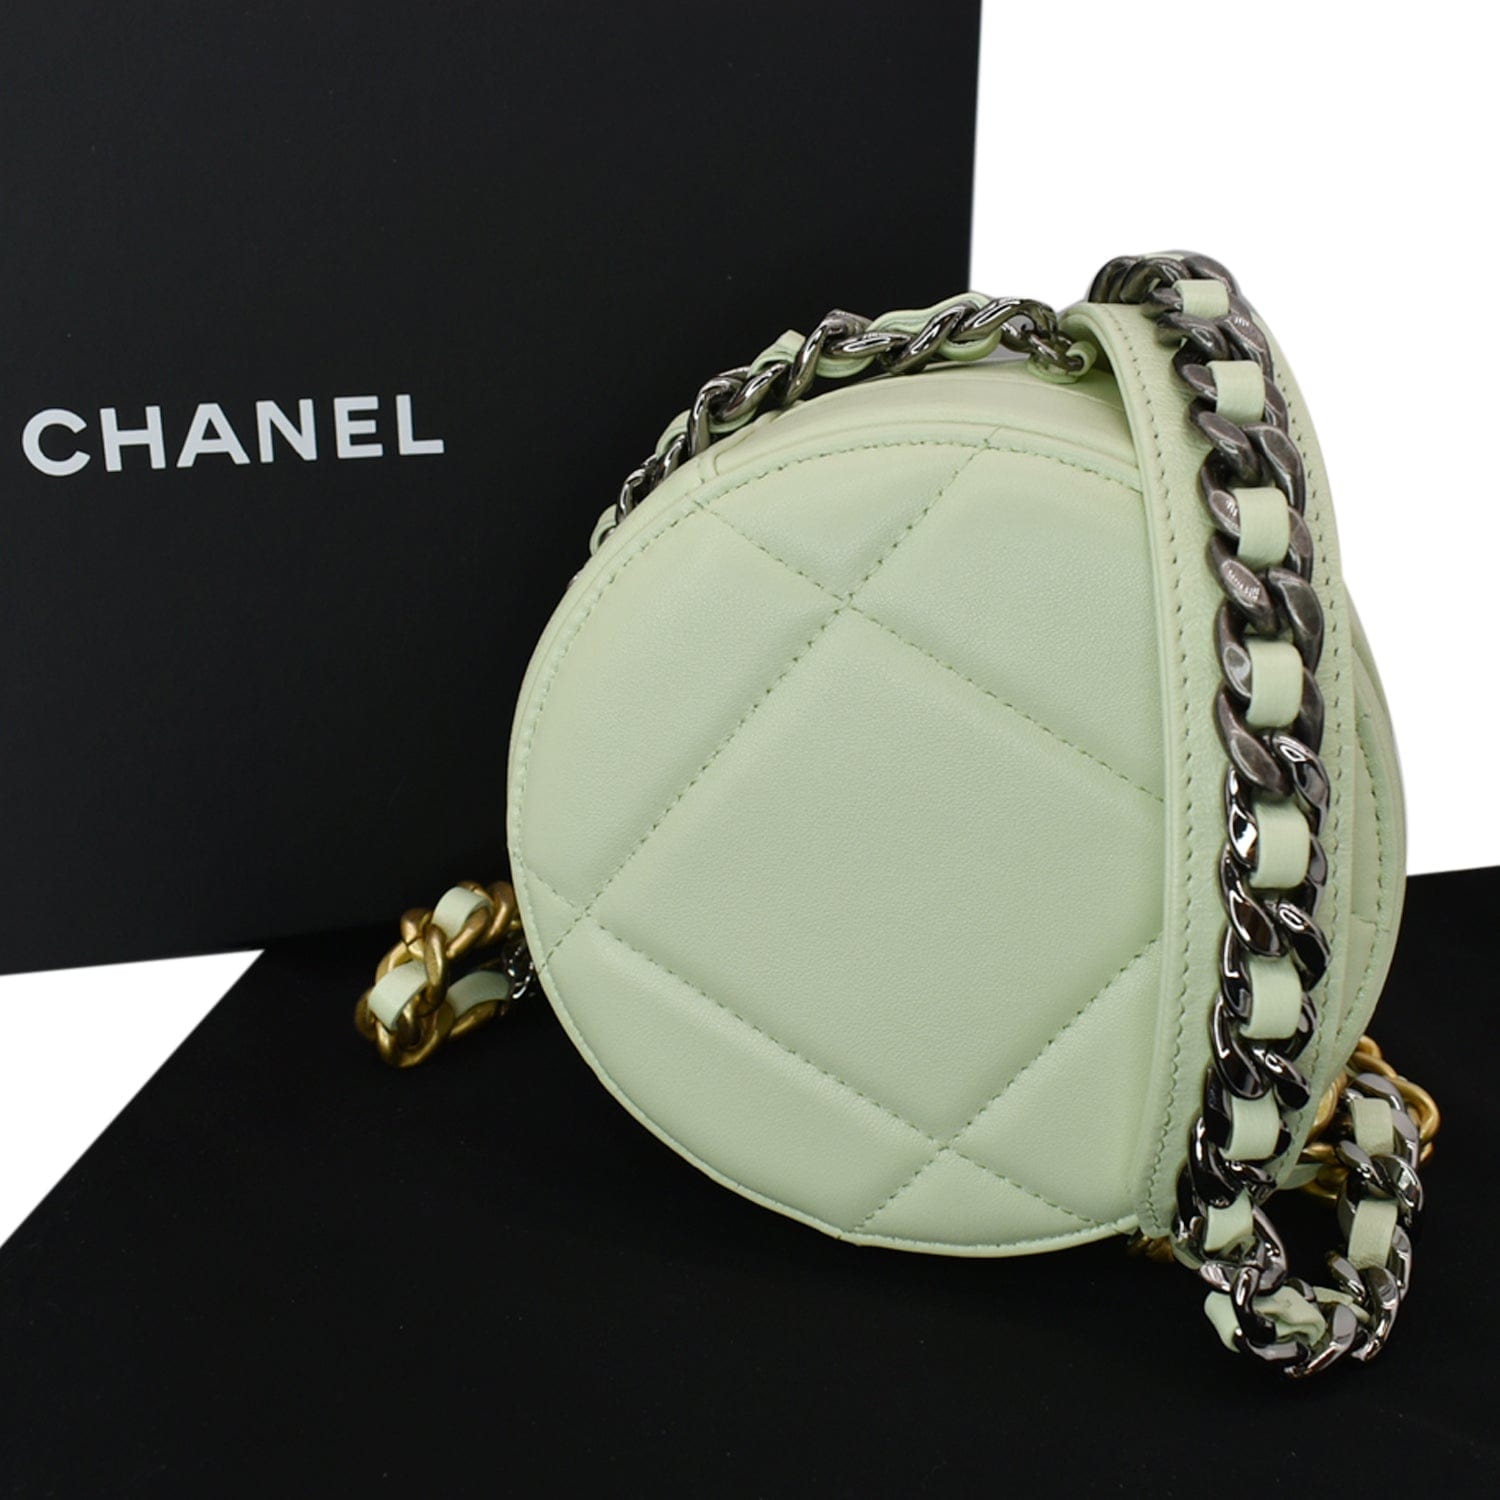 Chanel 19 Round Clutch on Chain  Louis vuitton speedy bag, Chanel